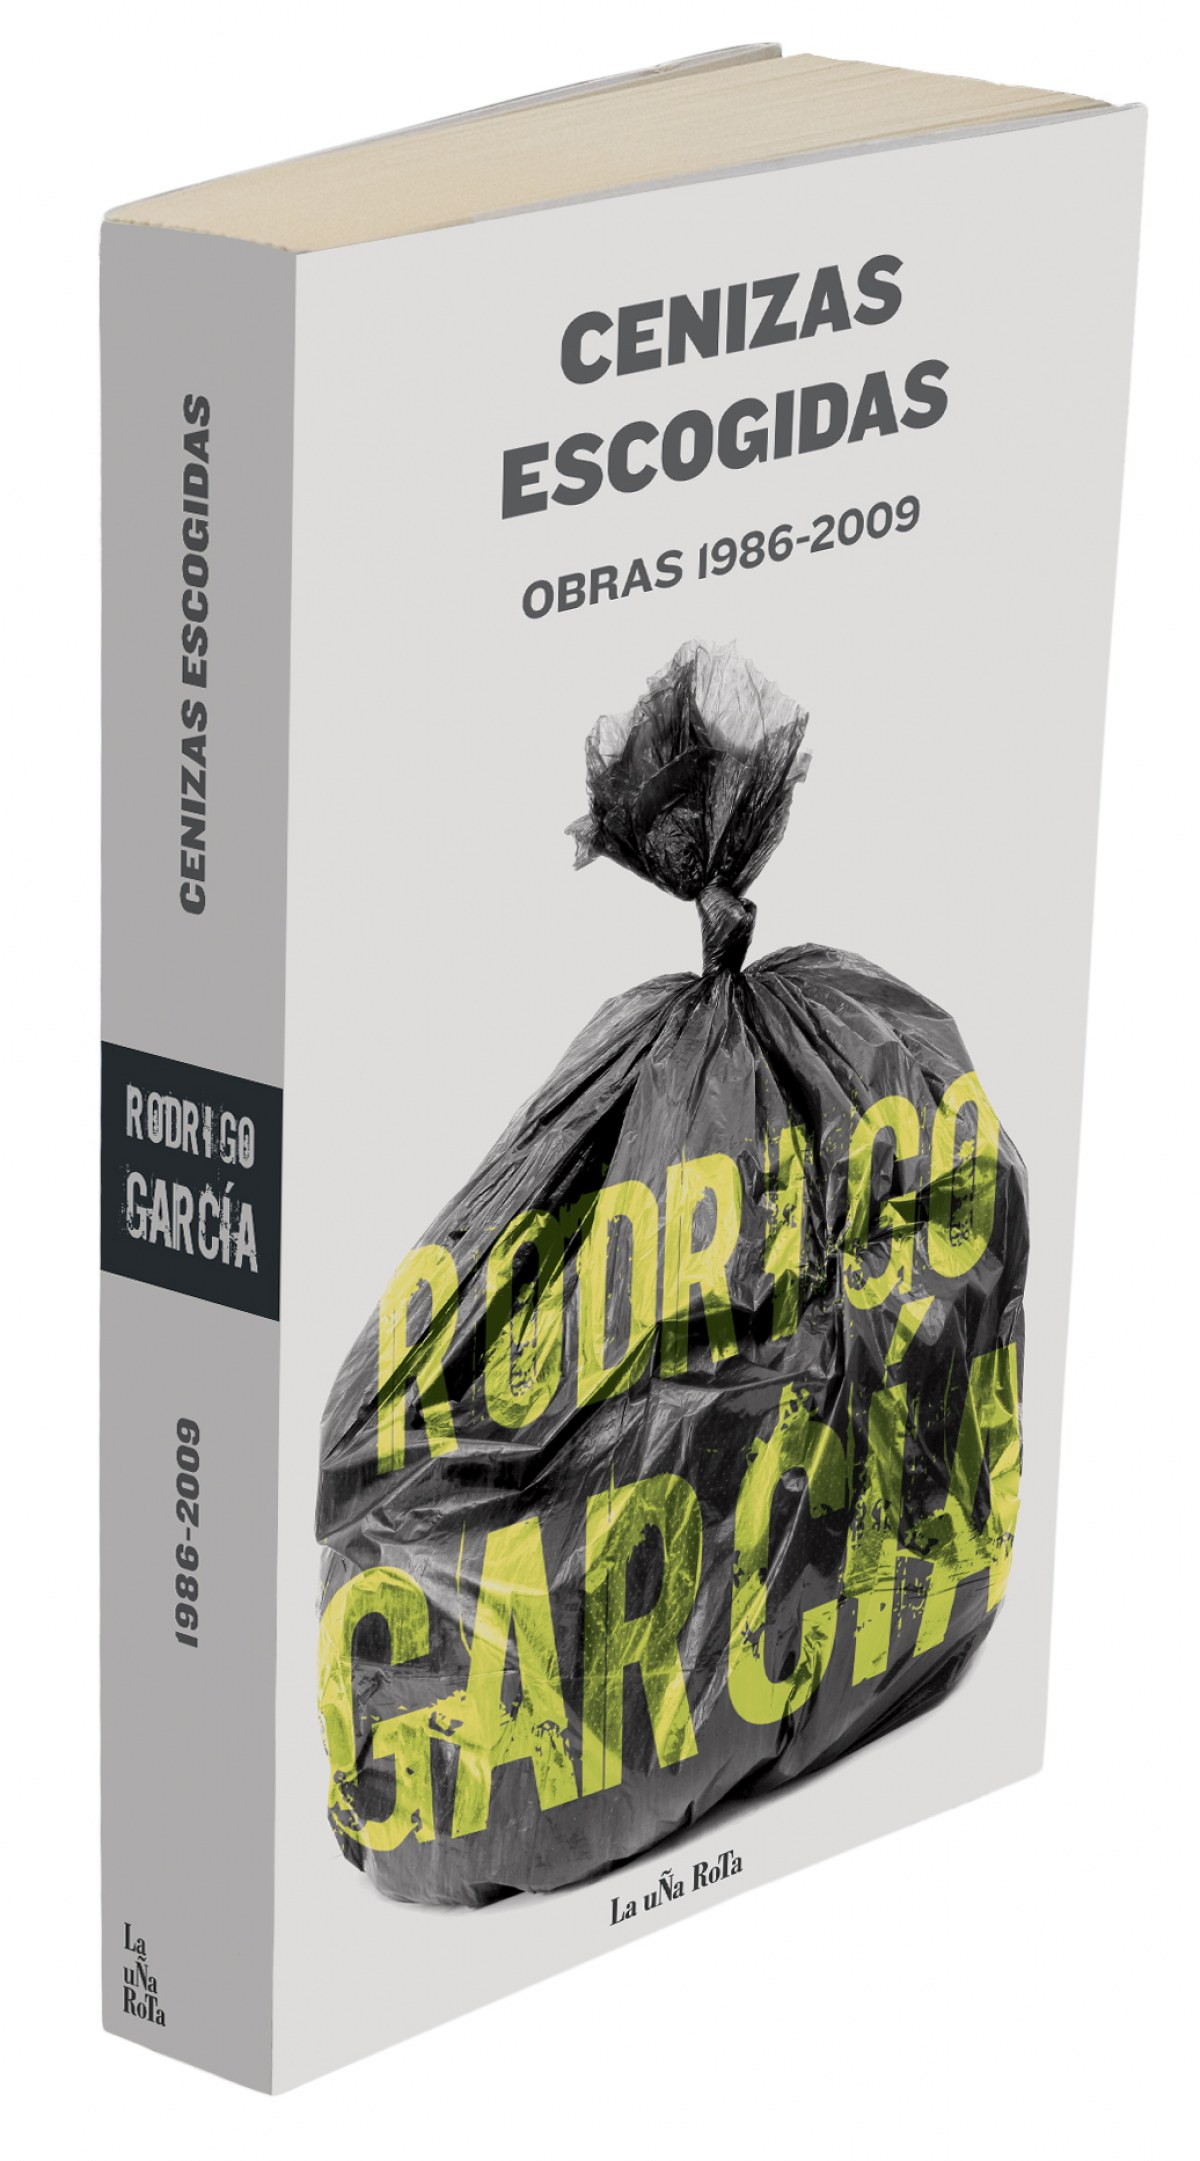 Cenizas escogidas: obras 1986-2009 - Garcia, Rodrigo